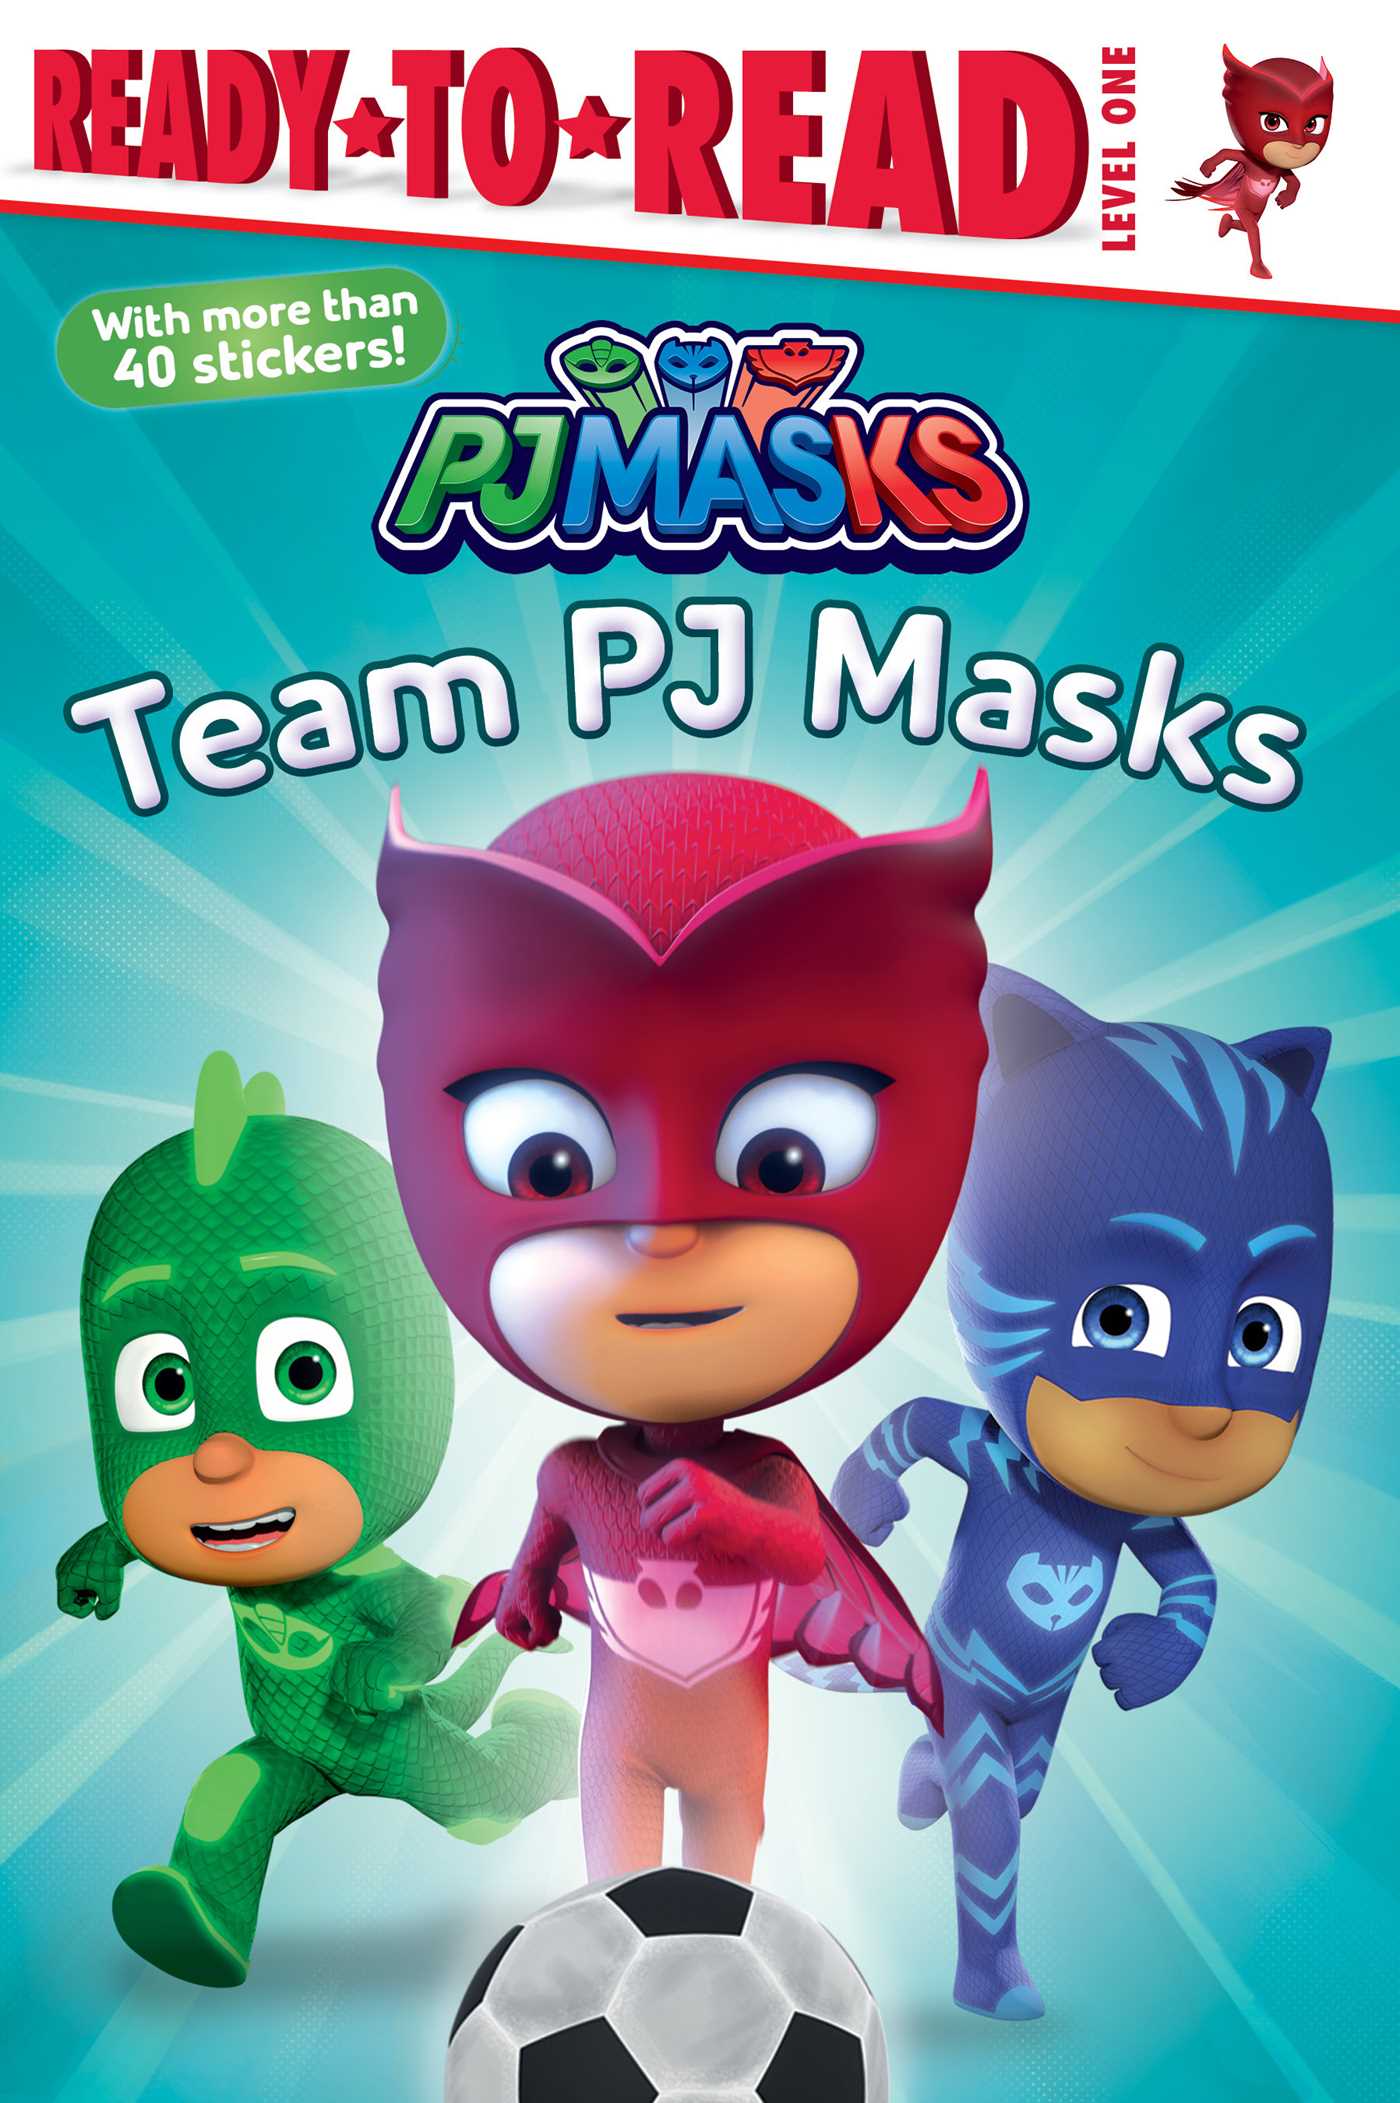 Team PJ Masks